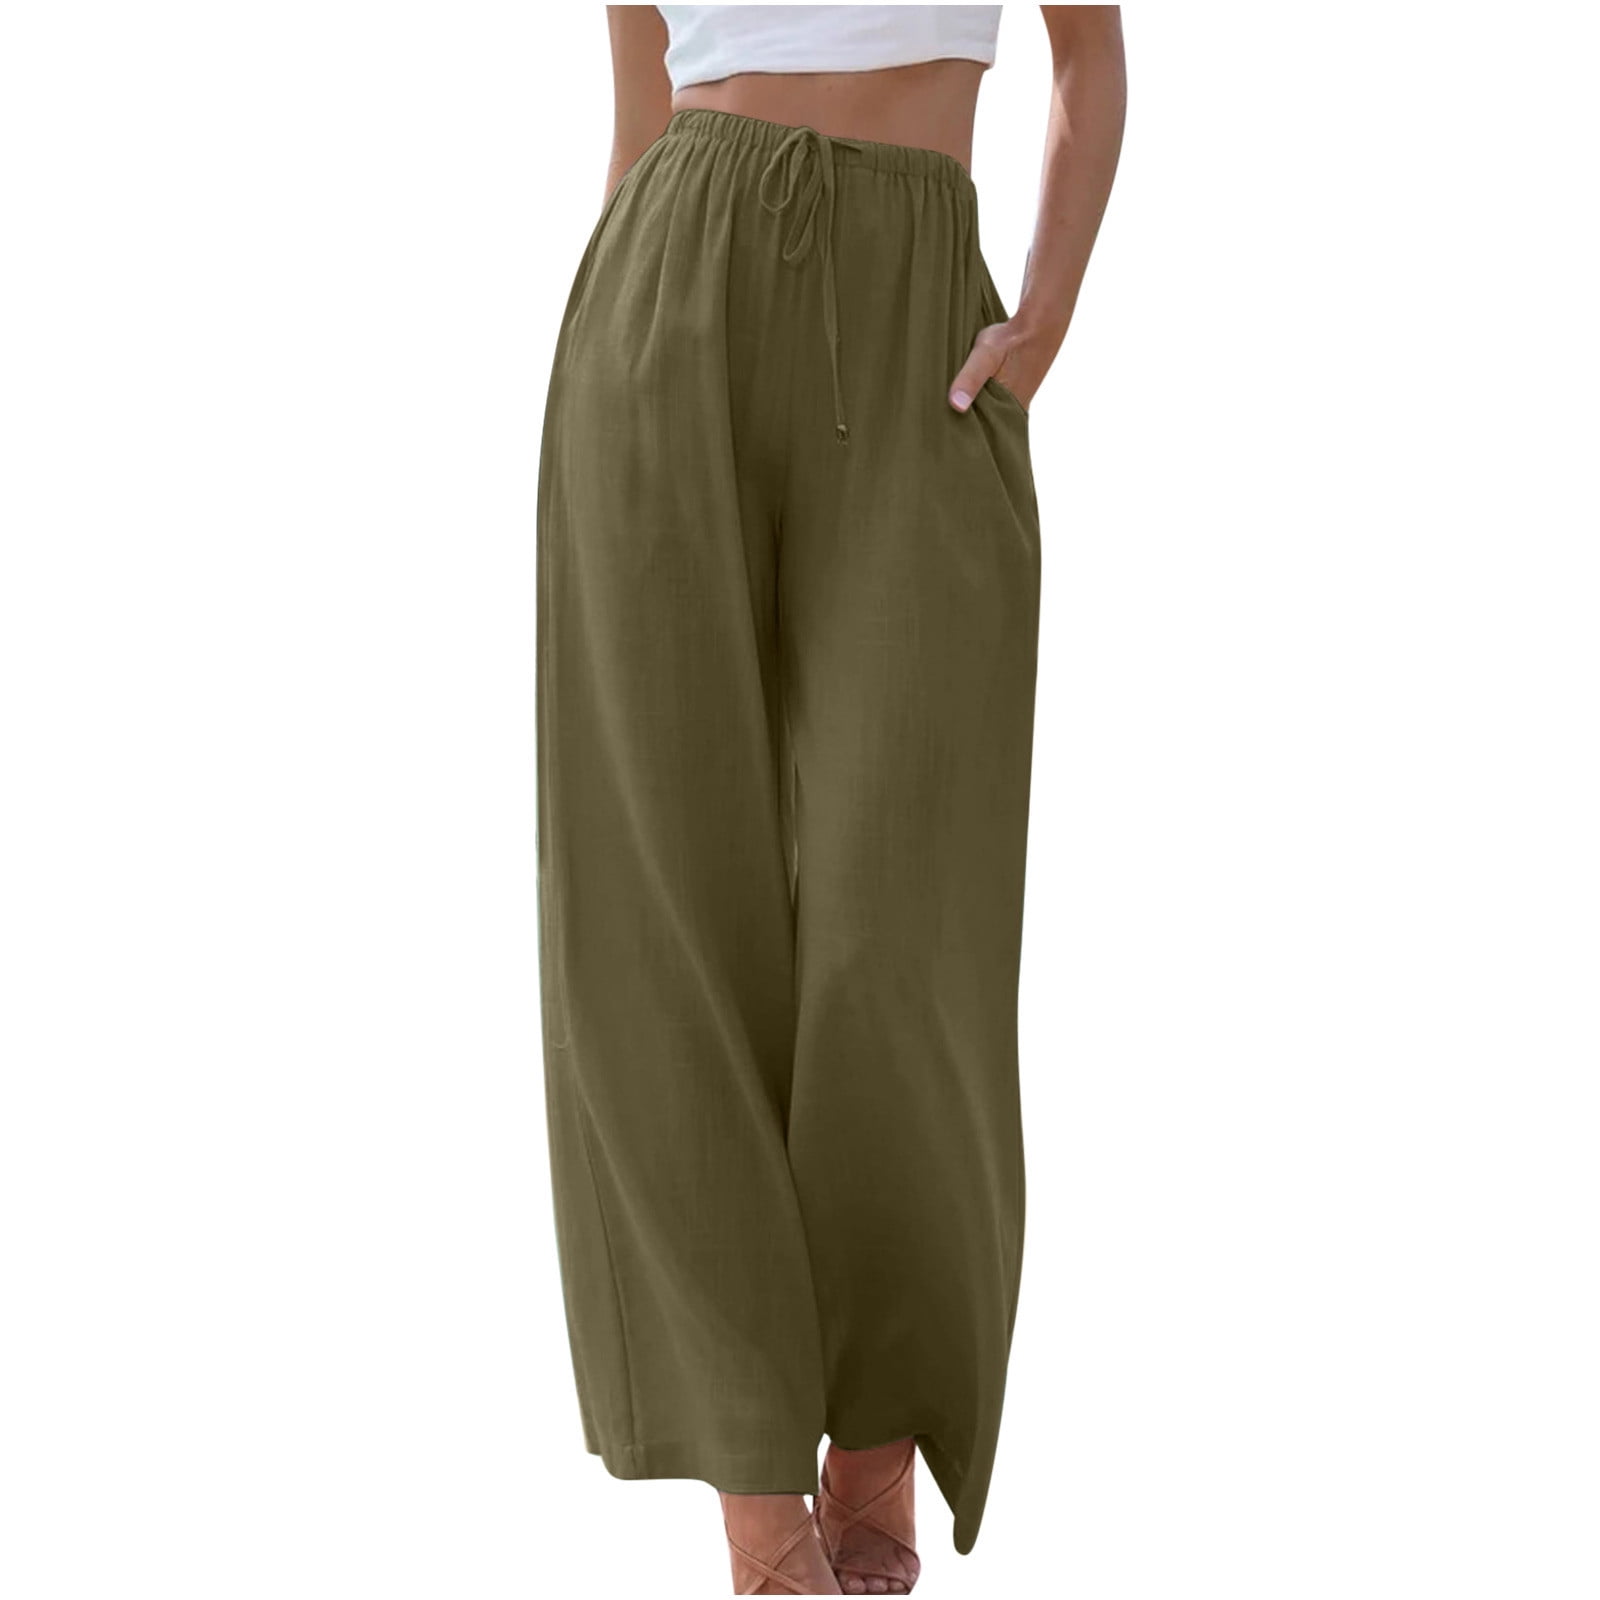 Buy JONAYA Women's Regular Casual Pants (J-DRW-Beige-S at Amazon.in